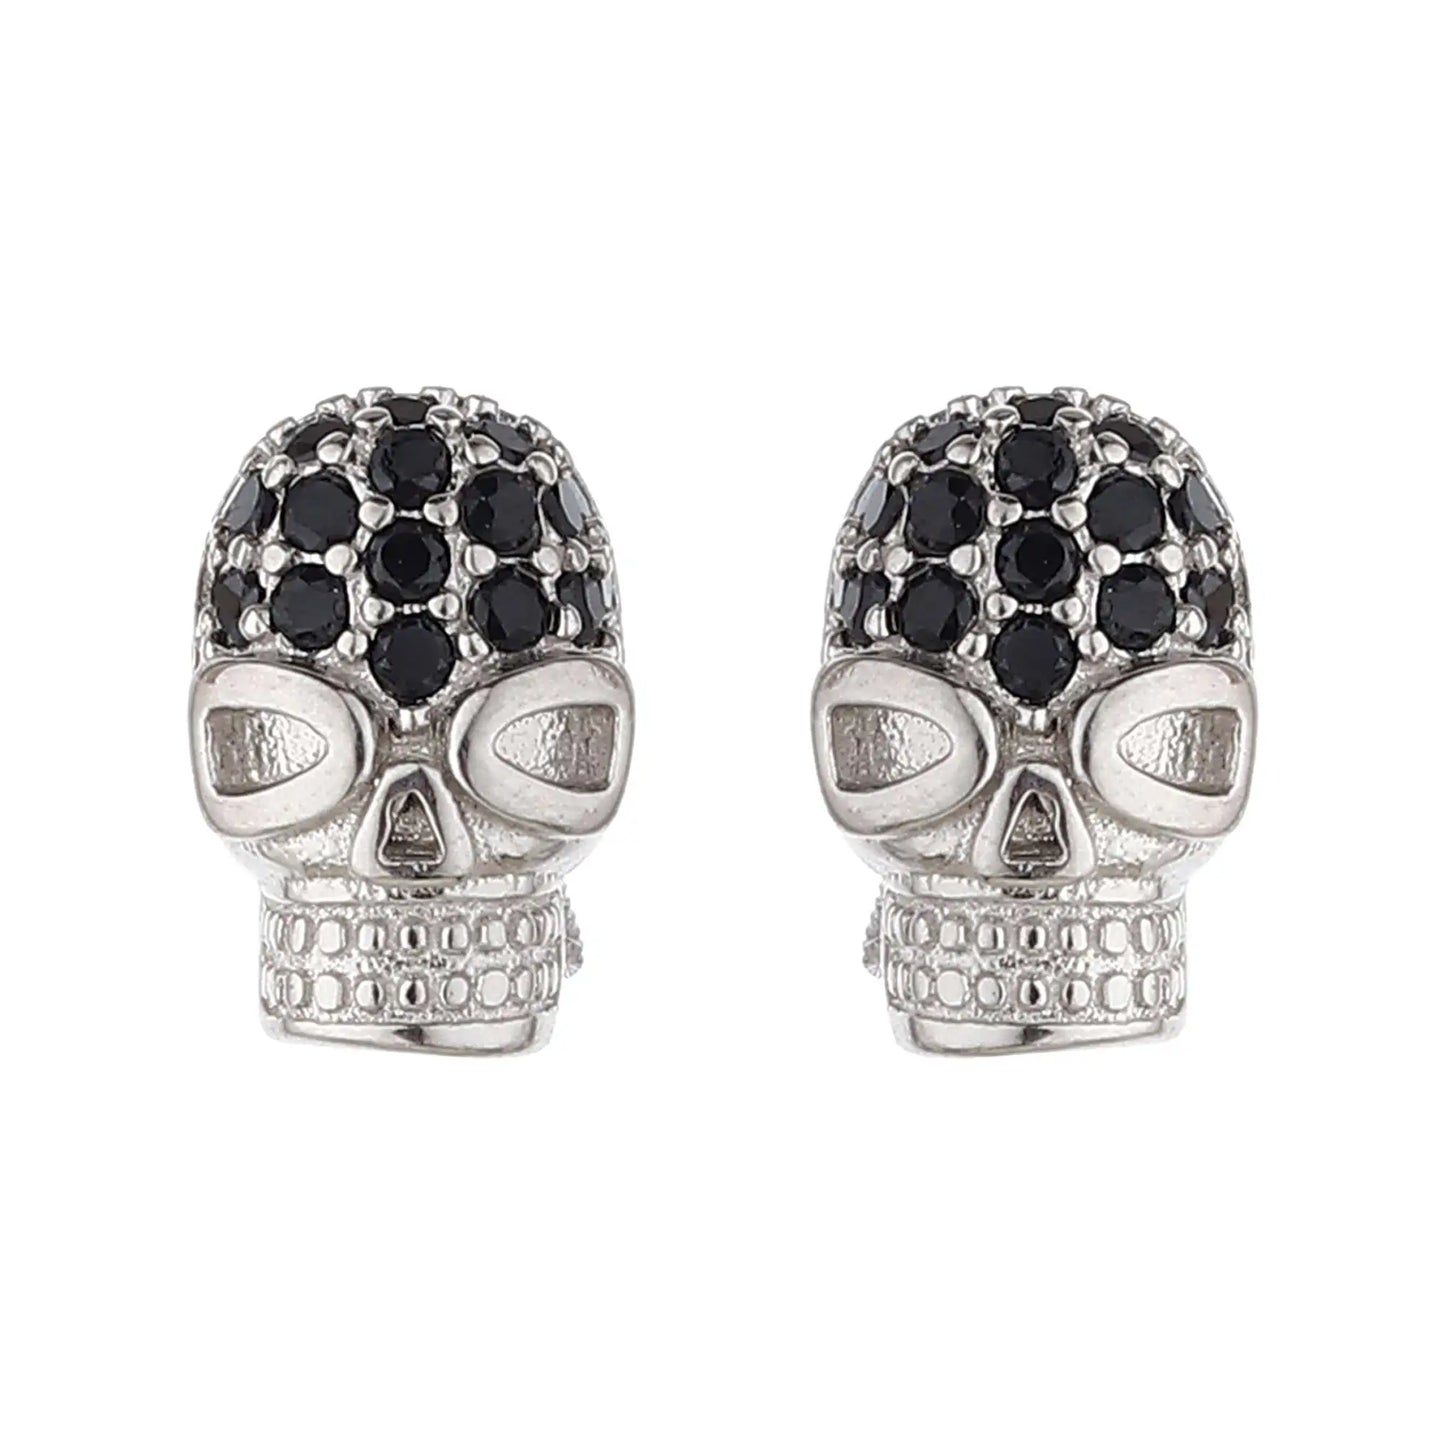 Skull Earrings with Black Rhinestones